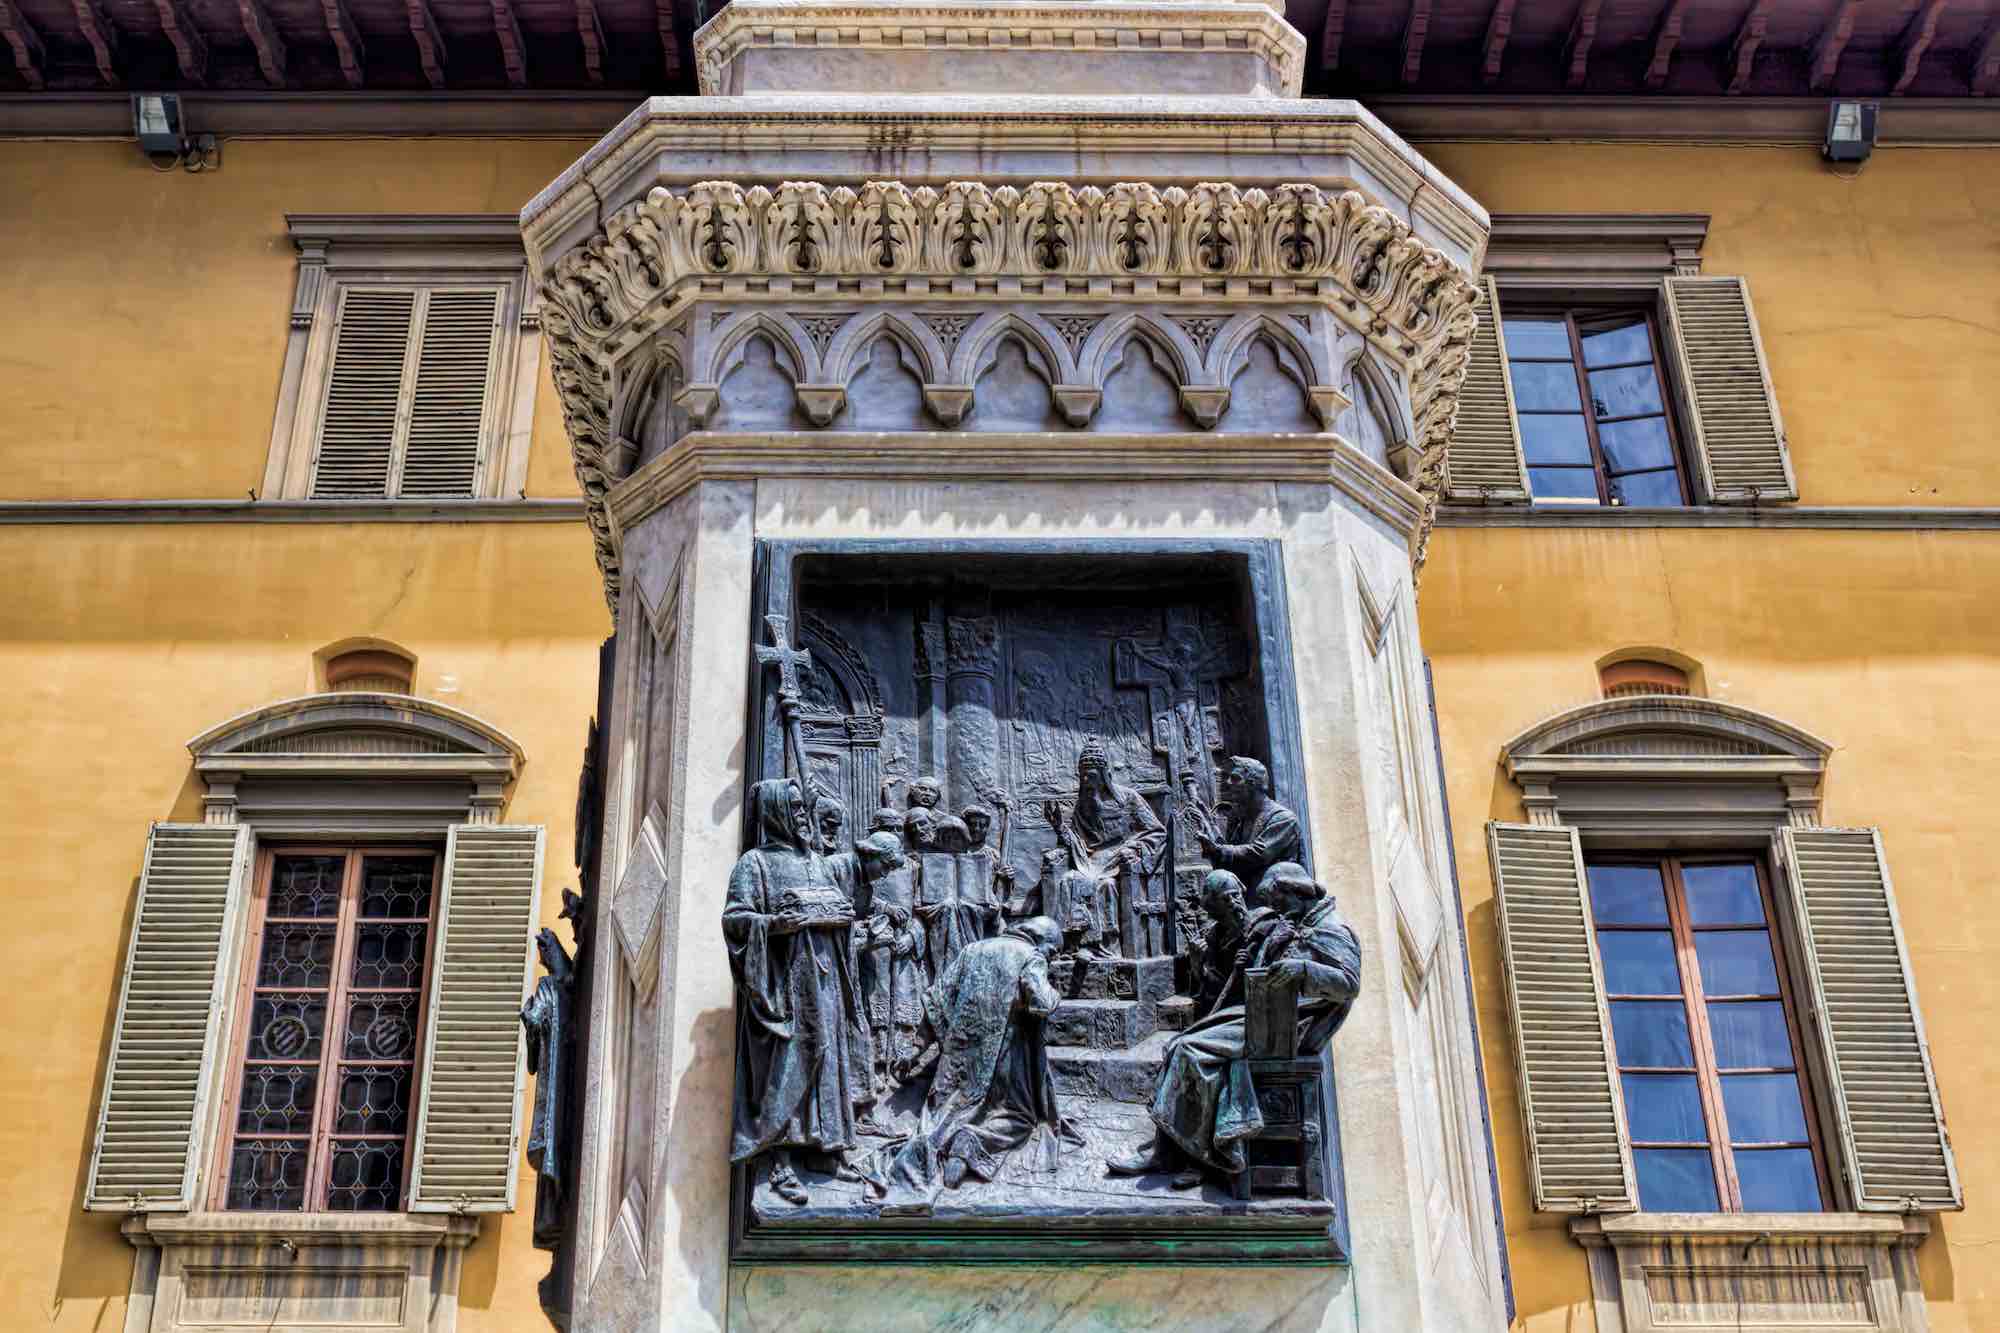 Statua di Francesco Datini a Prato